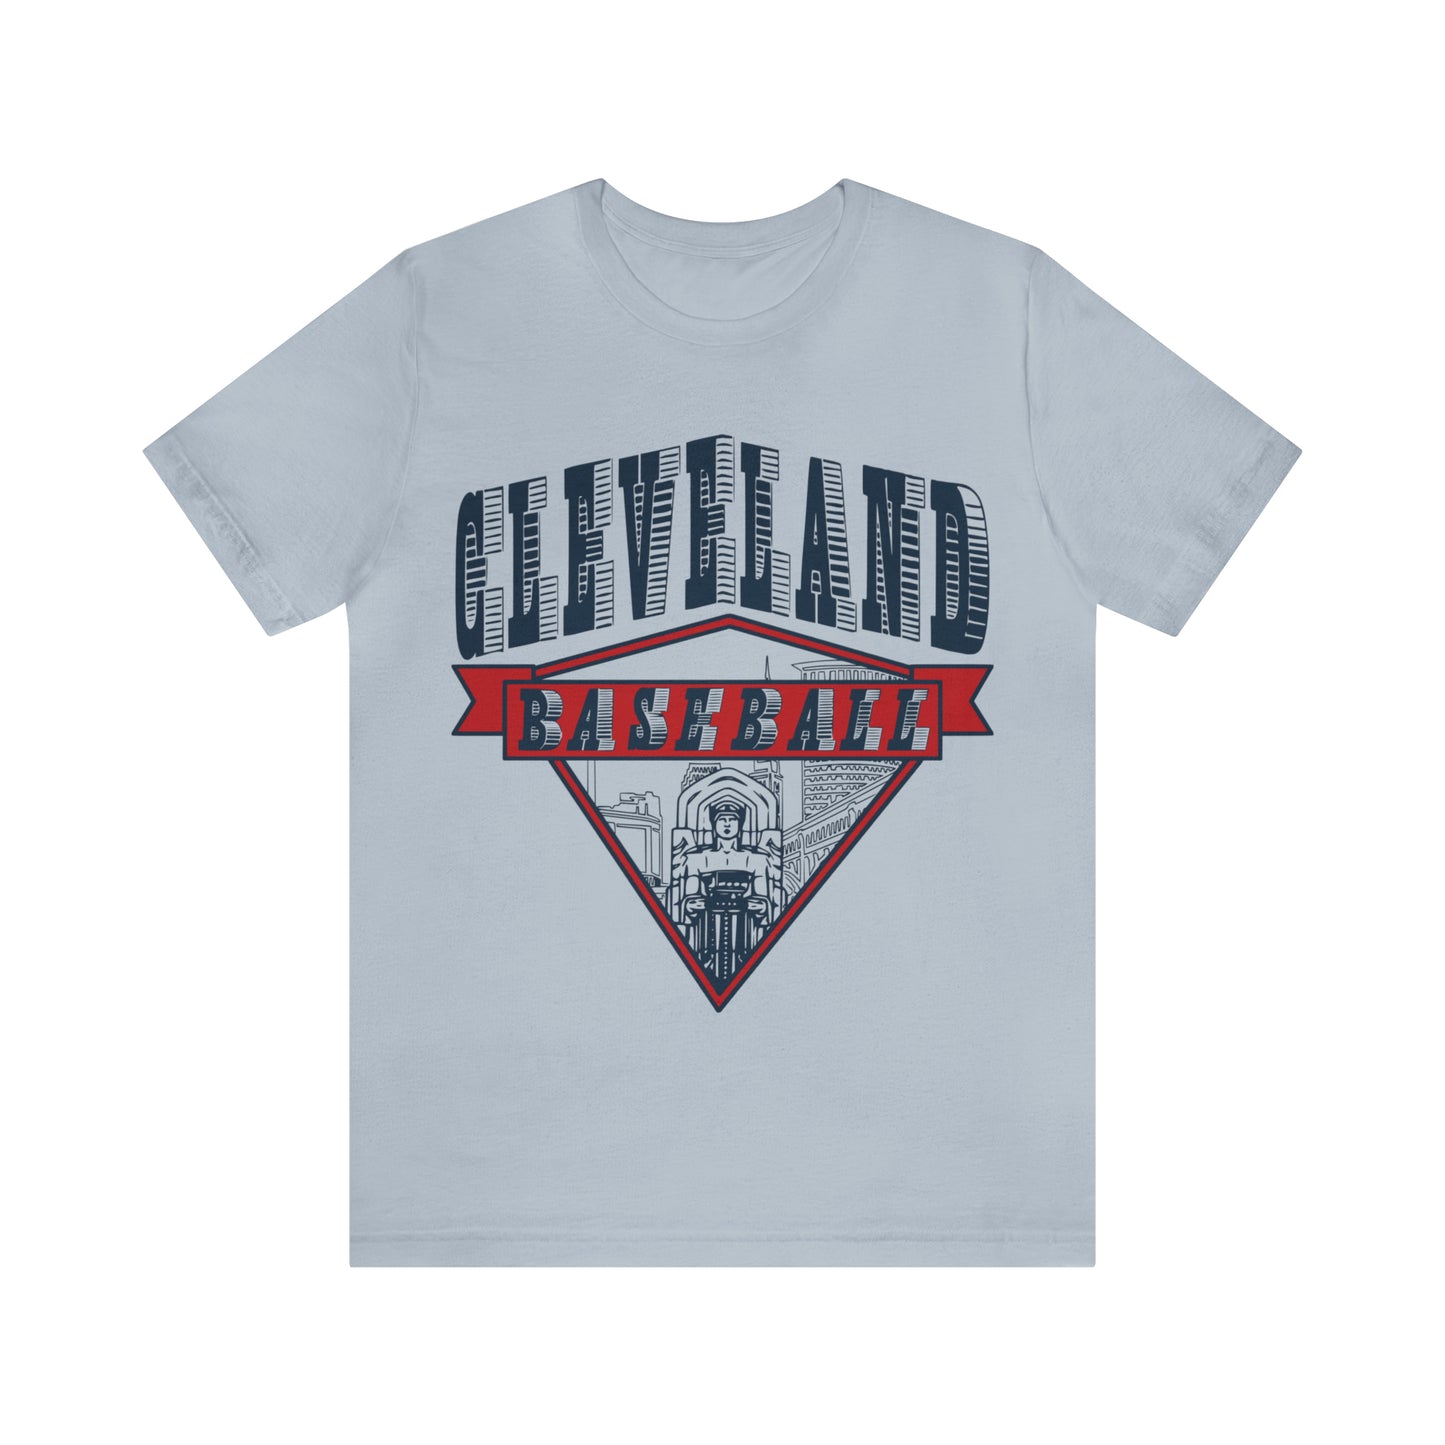 Vintage Cleveland Baseball Bridge Tee - Retro Unisex Short Sleeve T-Shirt